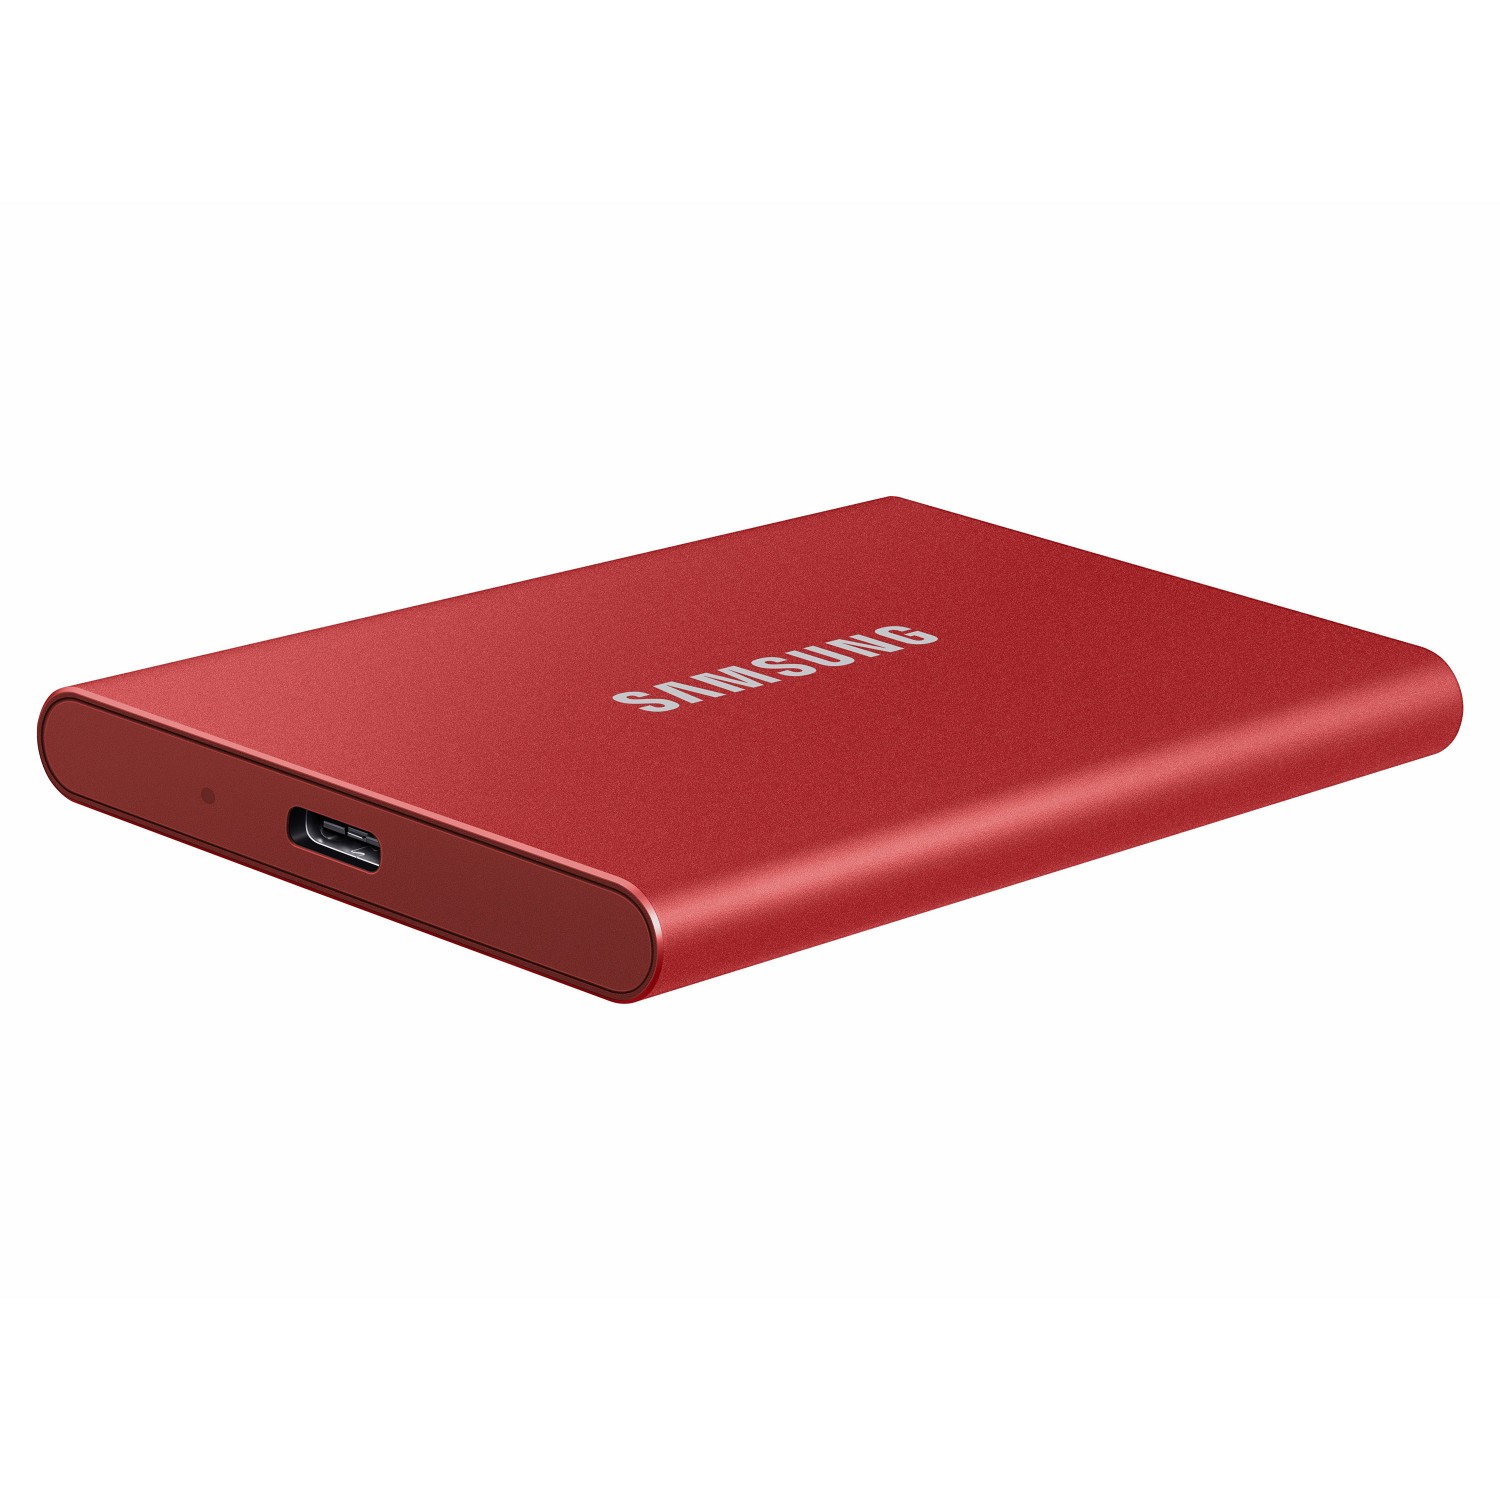 حافظه اس اس دی اکسترنال SAMSUNG T7 500GB - Metallic Red-3